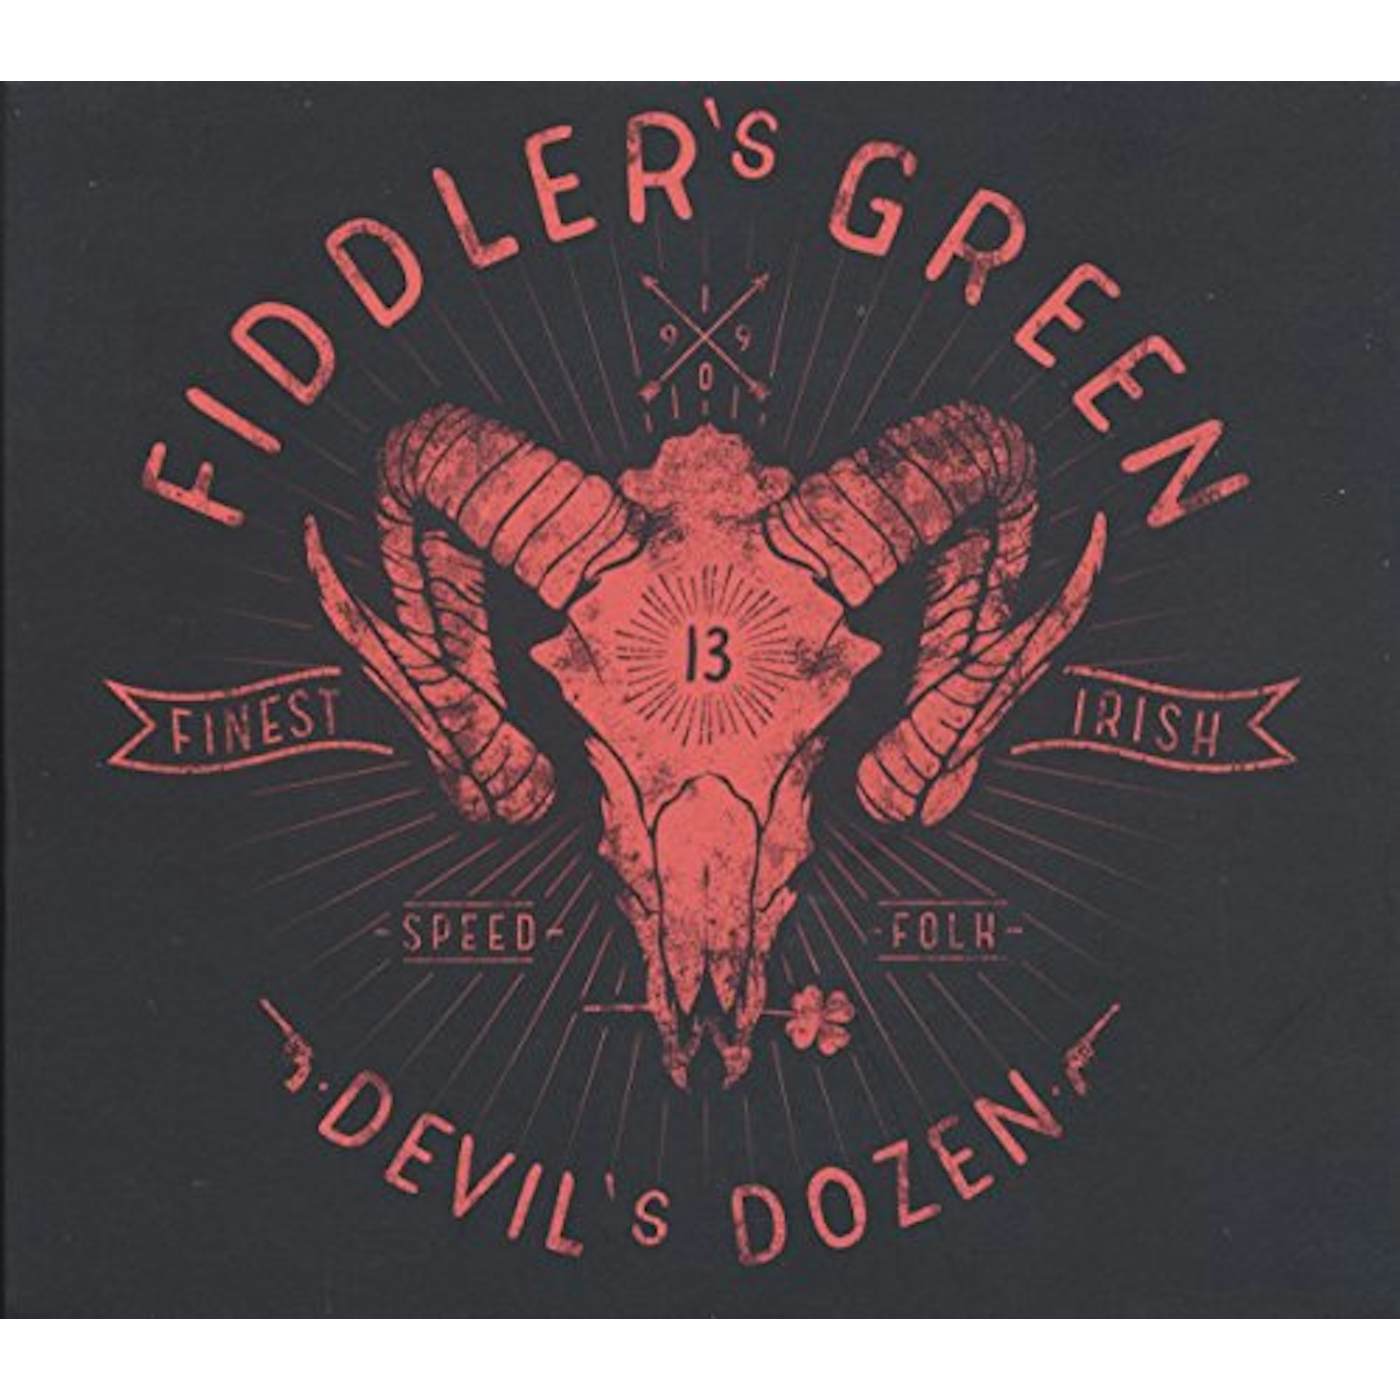 Fiddler's Green Devil's Dozen Vinyl Record